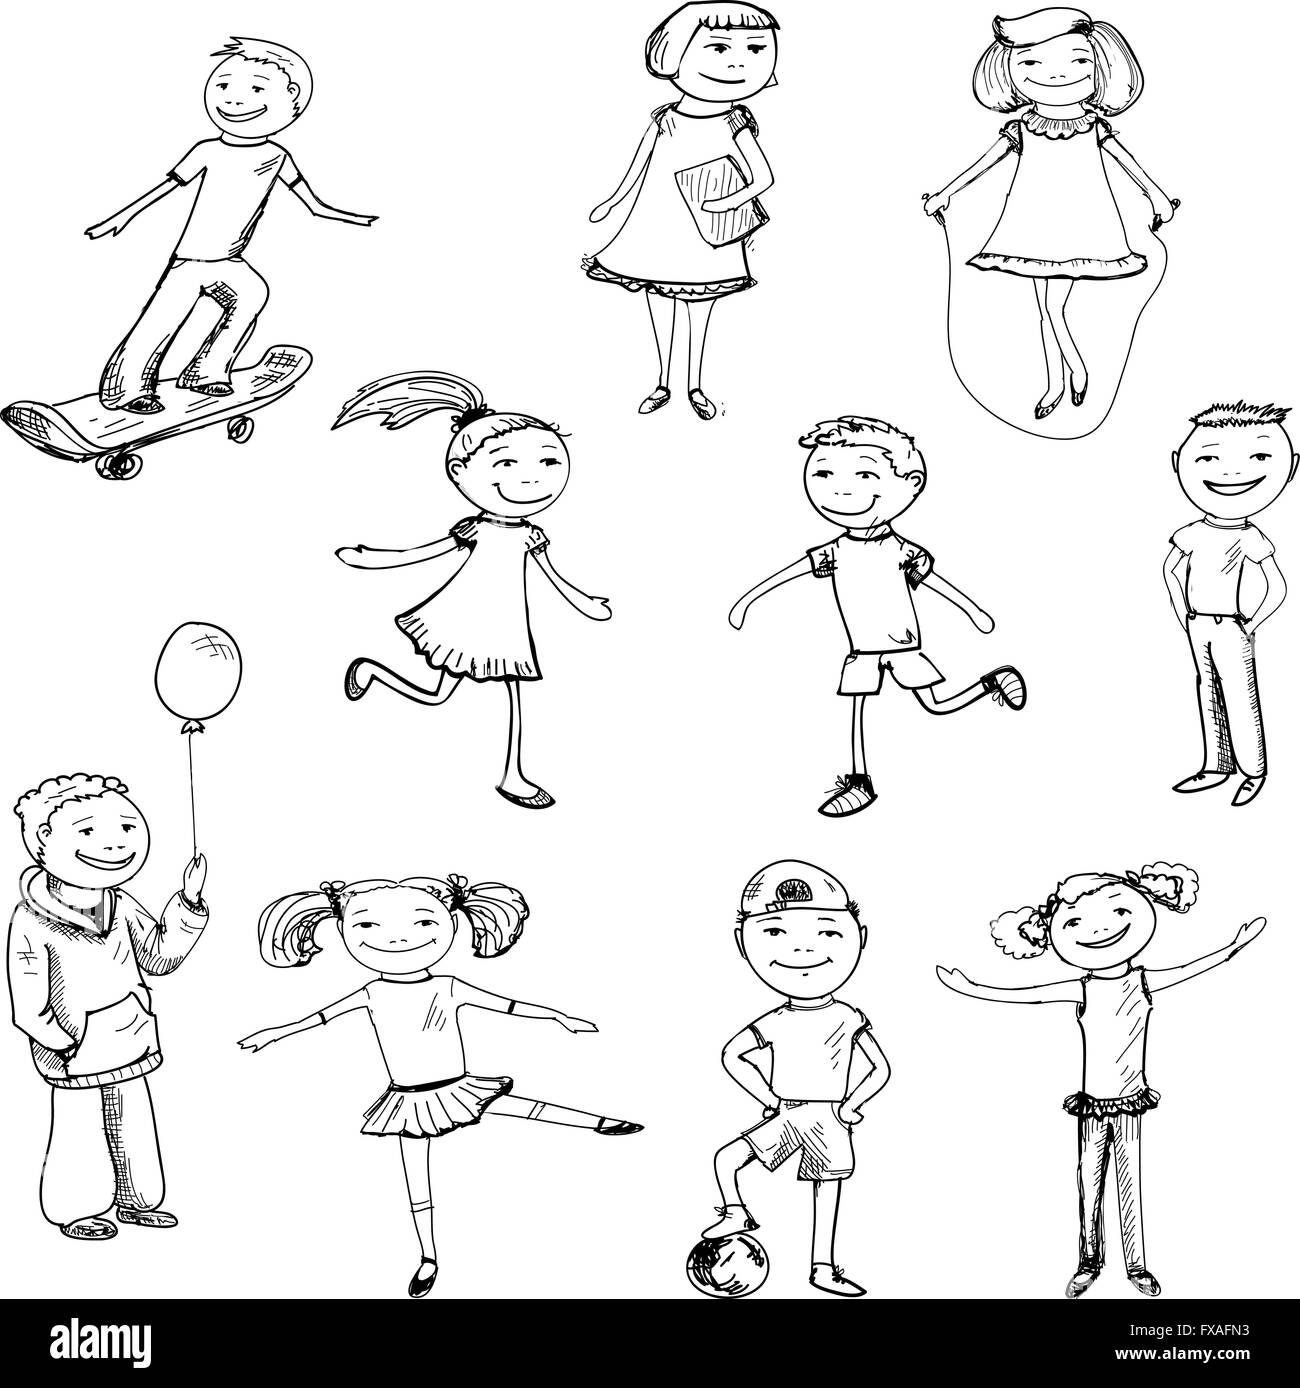 Children characters sketch Stock Vector Image & Art - Alamy